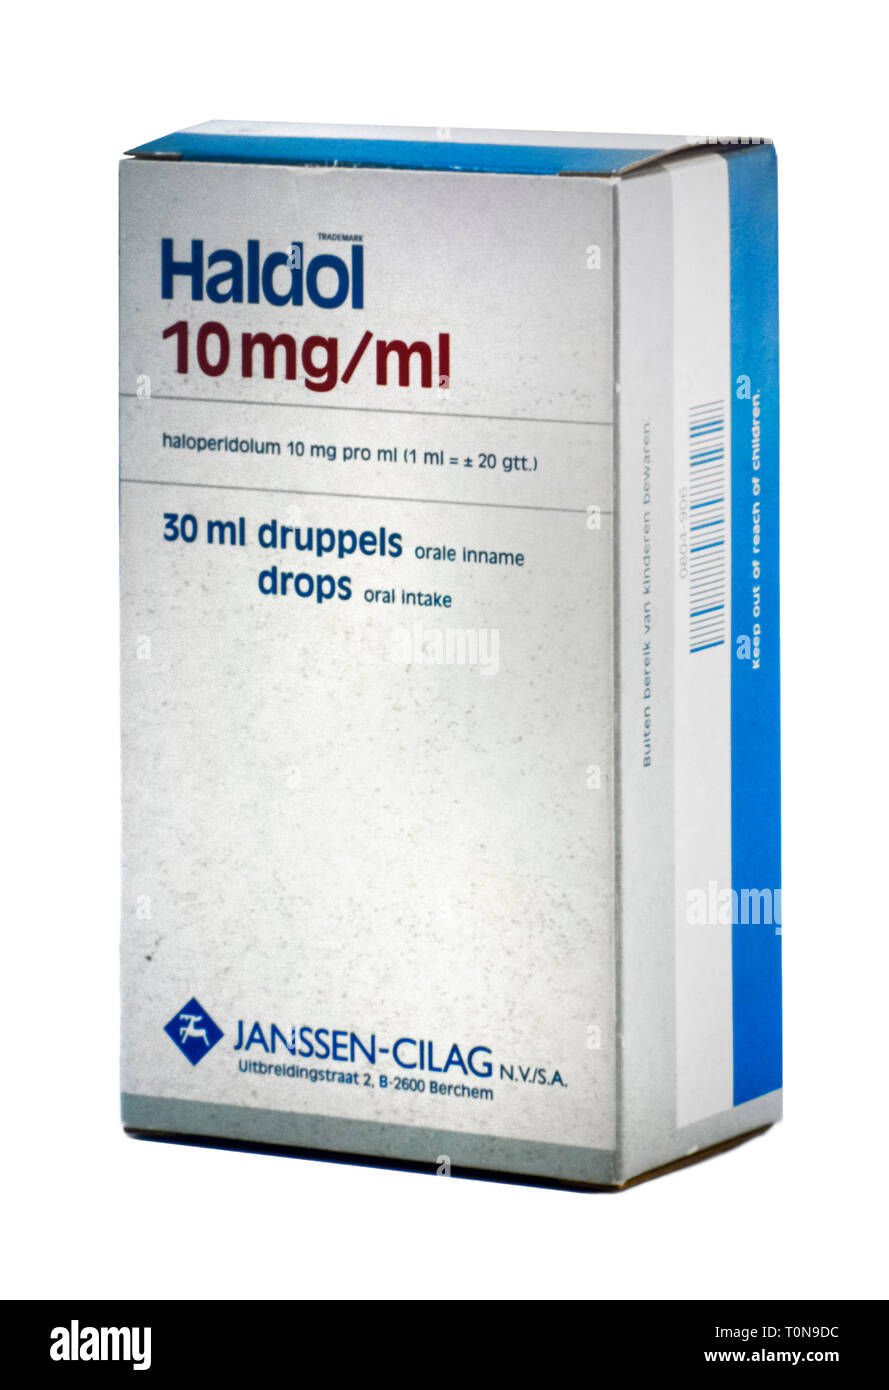 / El haloperidol Haldol, medicamento antipsicótico utilizado en el tratamiento de la esquizofrenia, la manía en el trastorno bipolar, psicosis aguda y alucinaciones Foto de stock